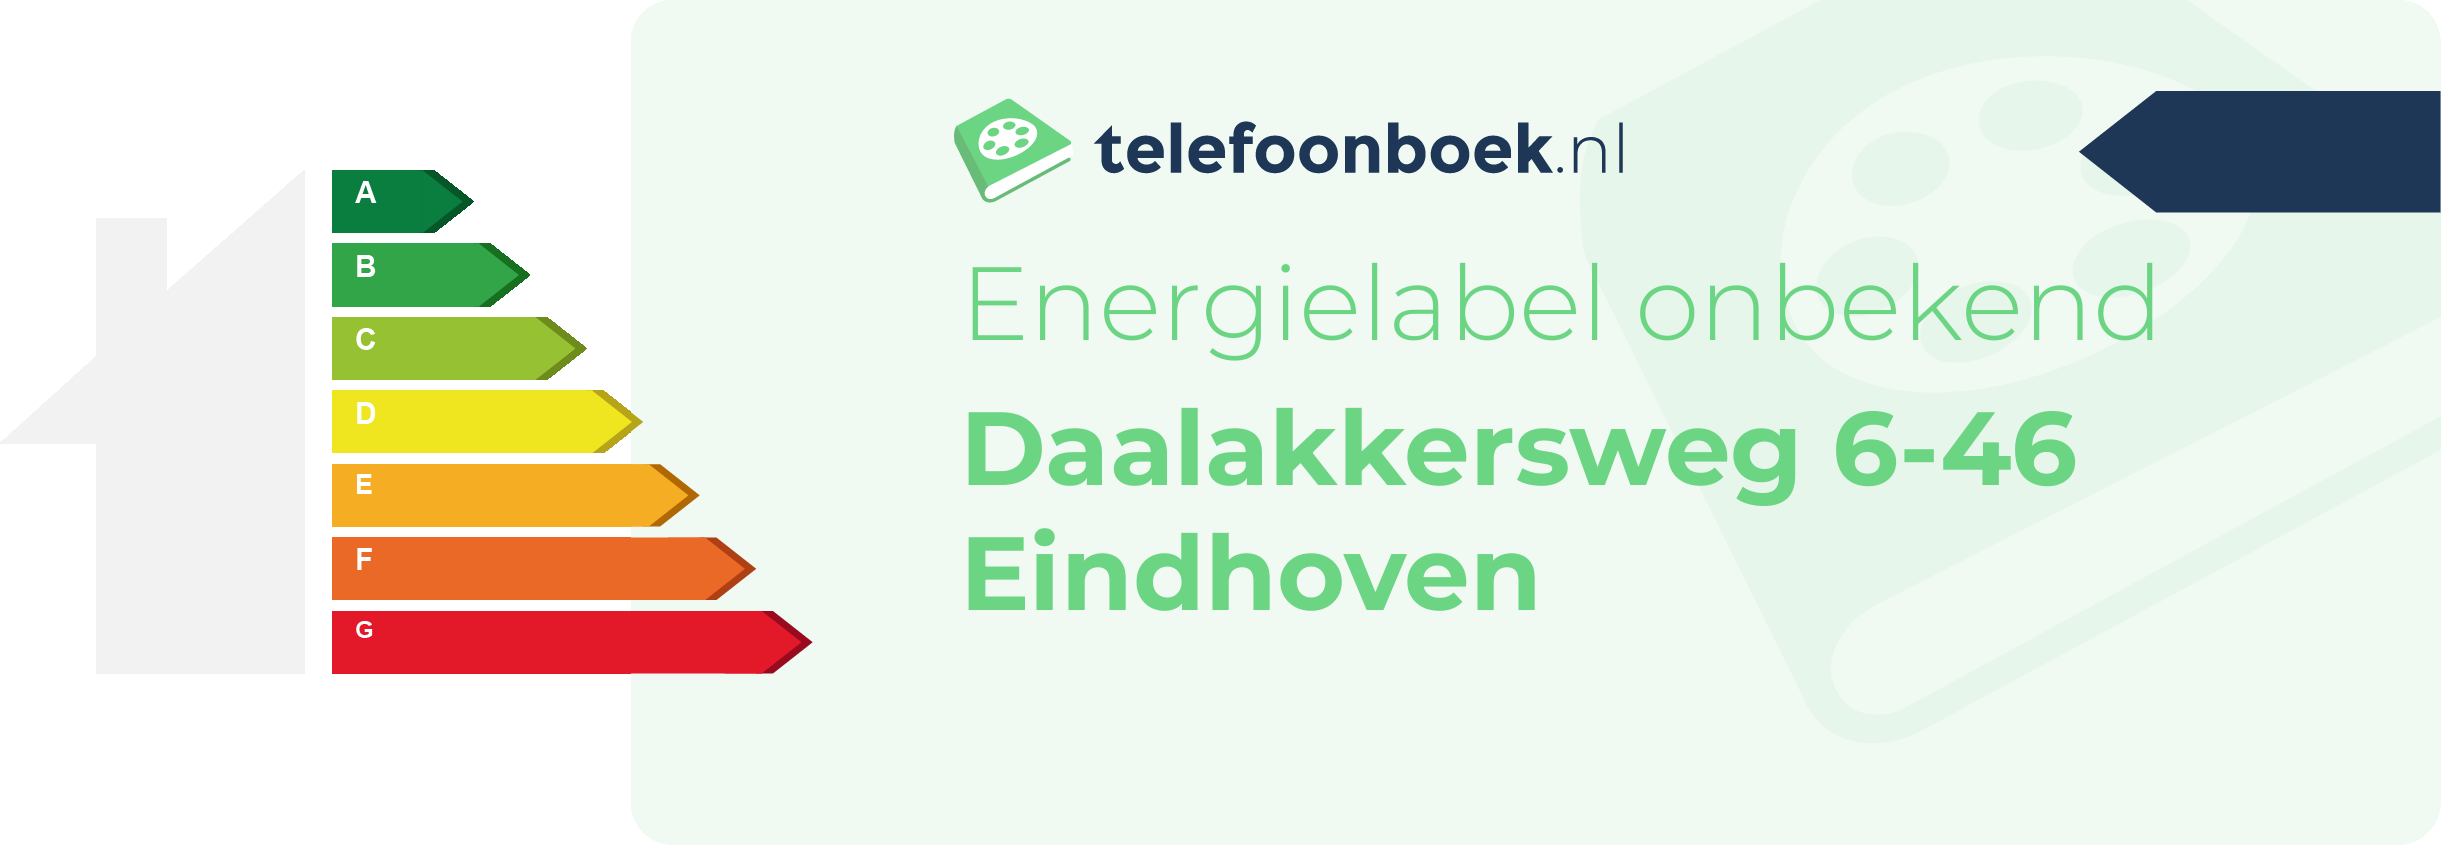 Energielabel Daalakkersweg 6-46 Eindhoven